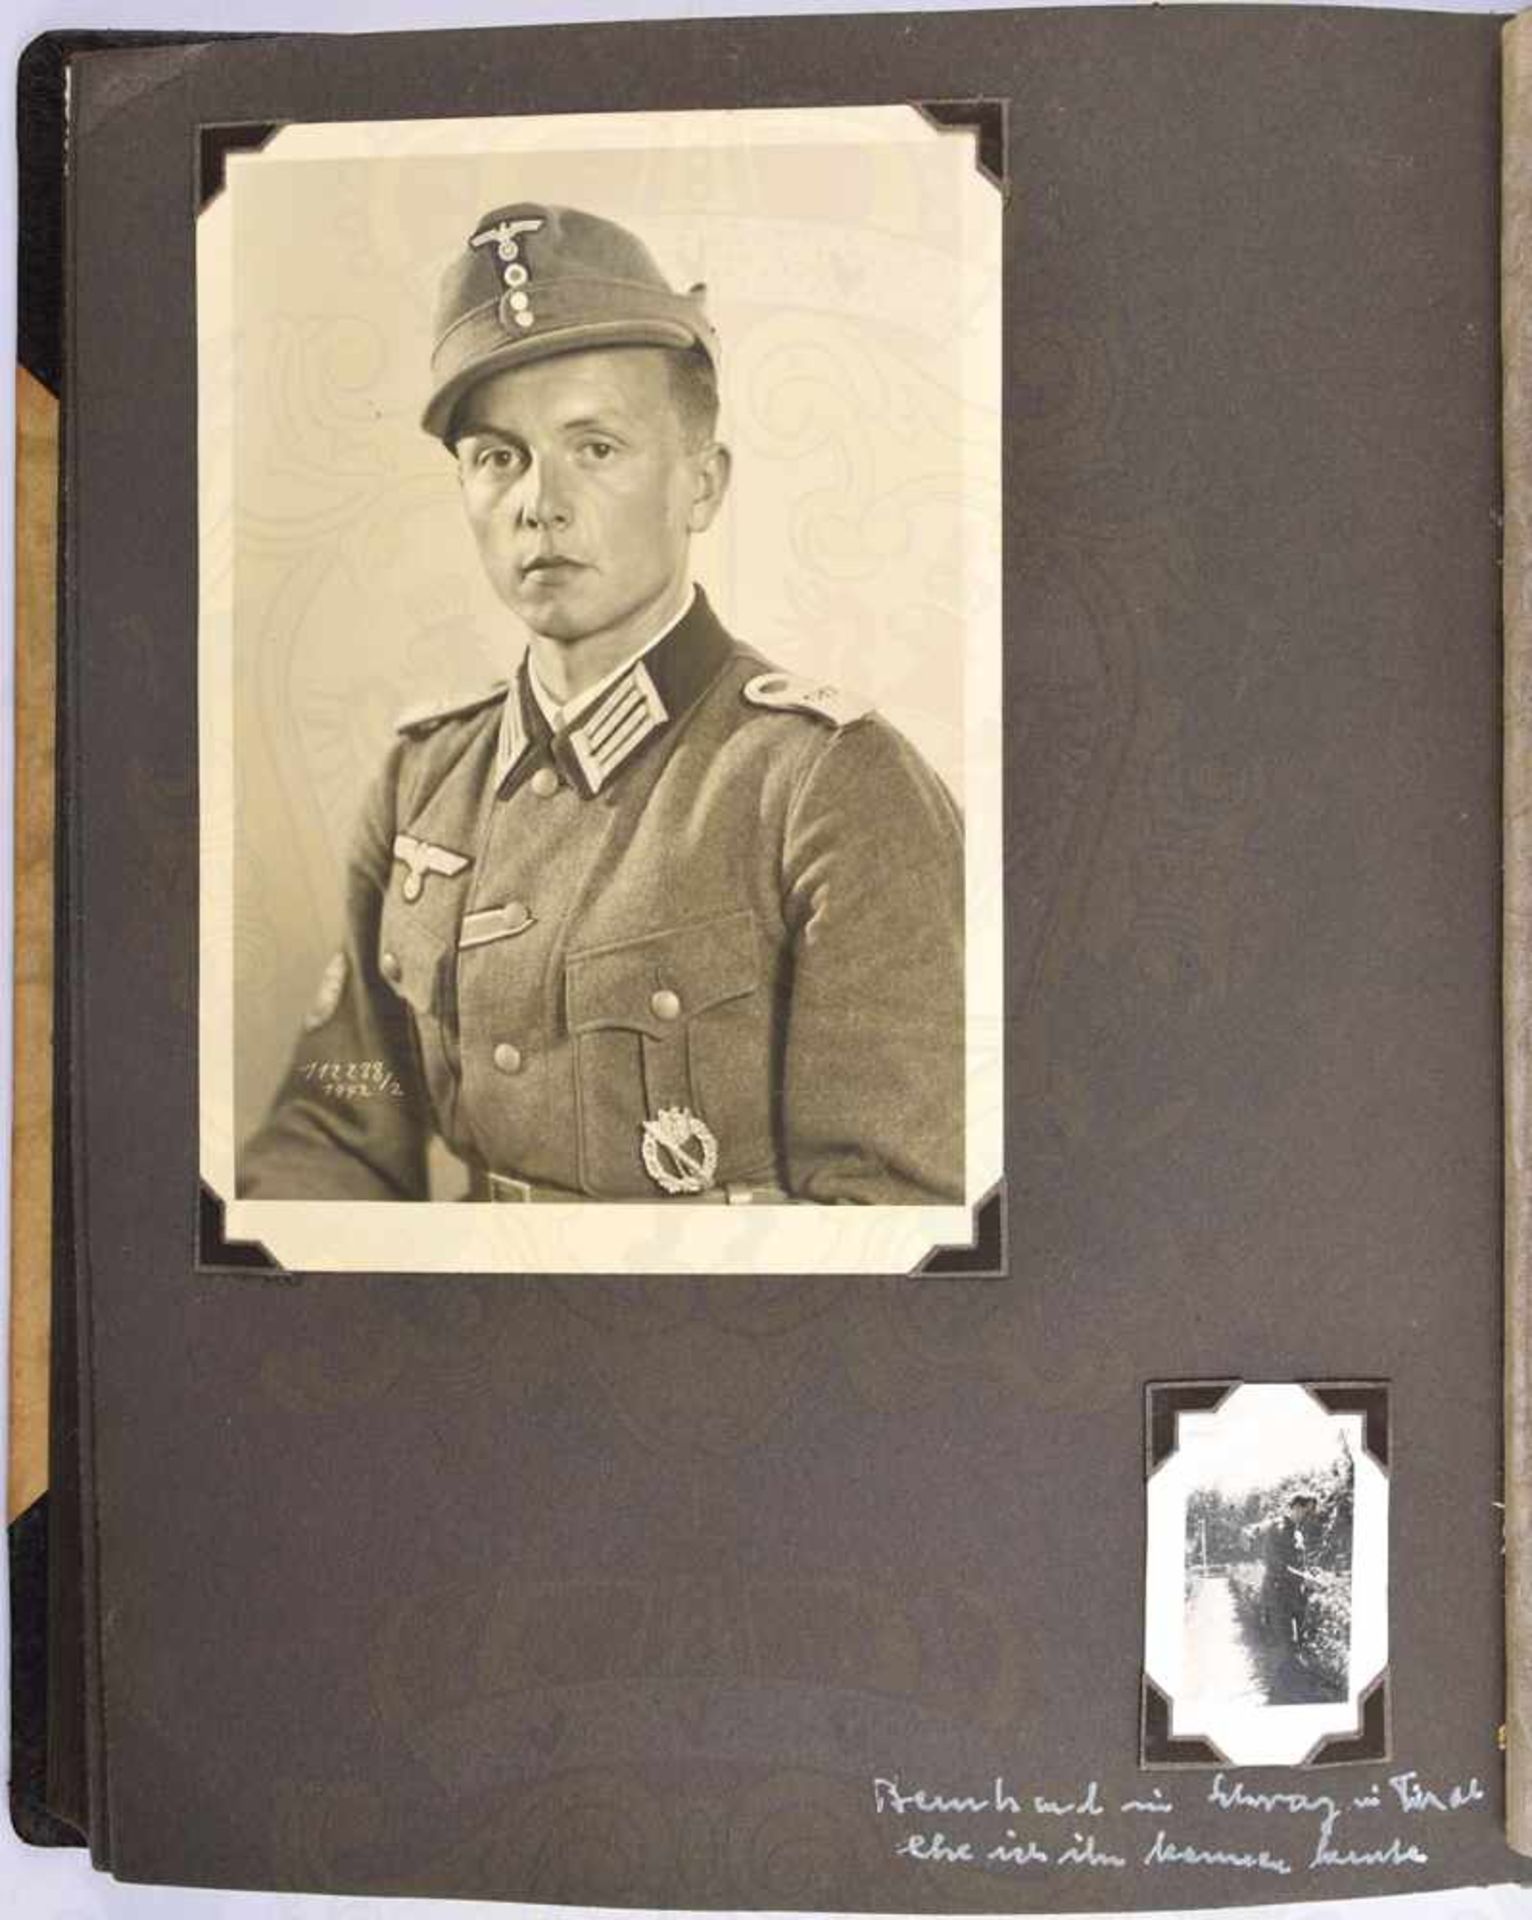 FOTOALBUM EINES LEUTNANTS, ca. 180 Fotos, davon 27 militärisch, 1939-1942, Portraits, Kameraden, - Bild 2 aus 2